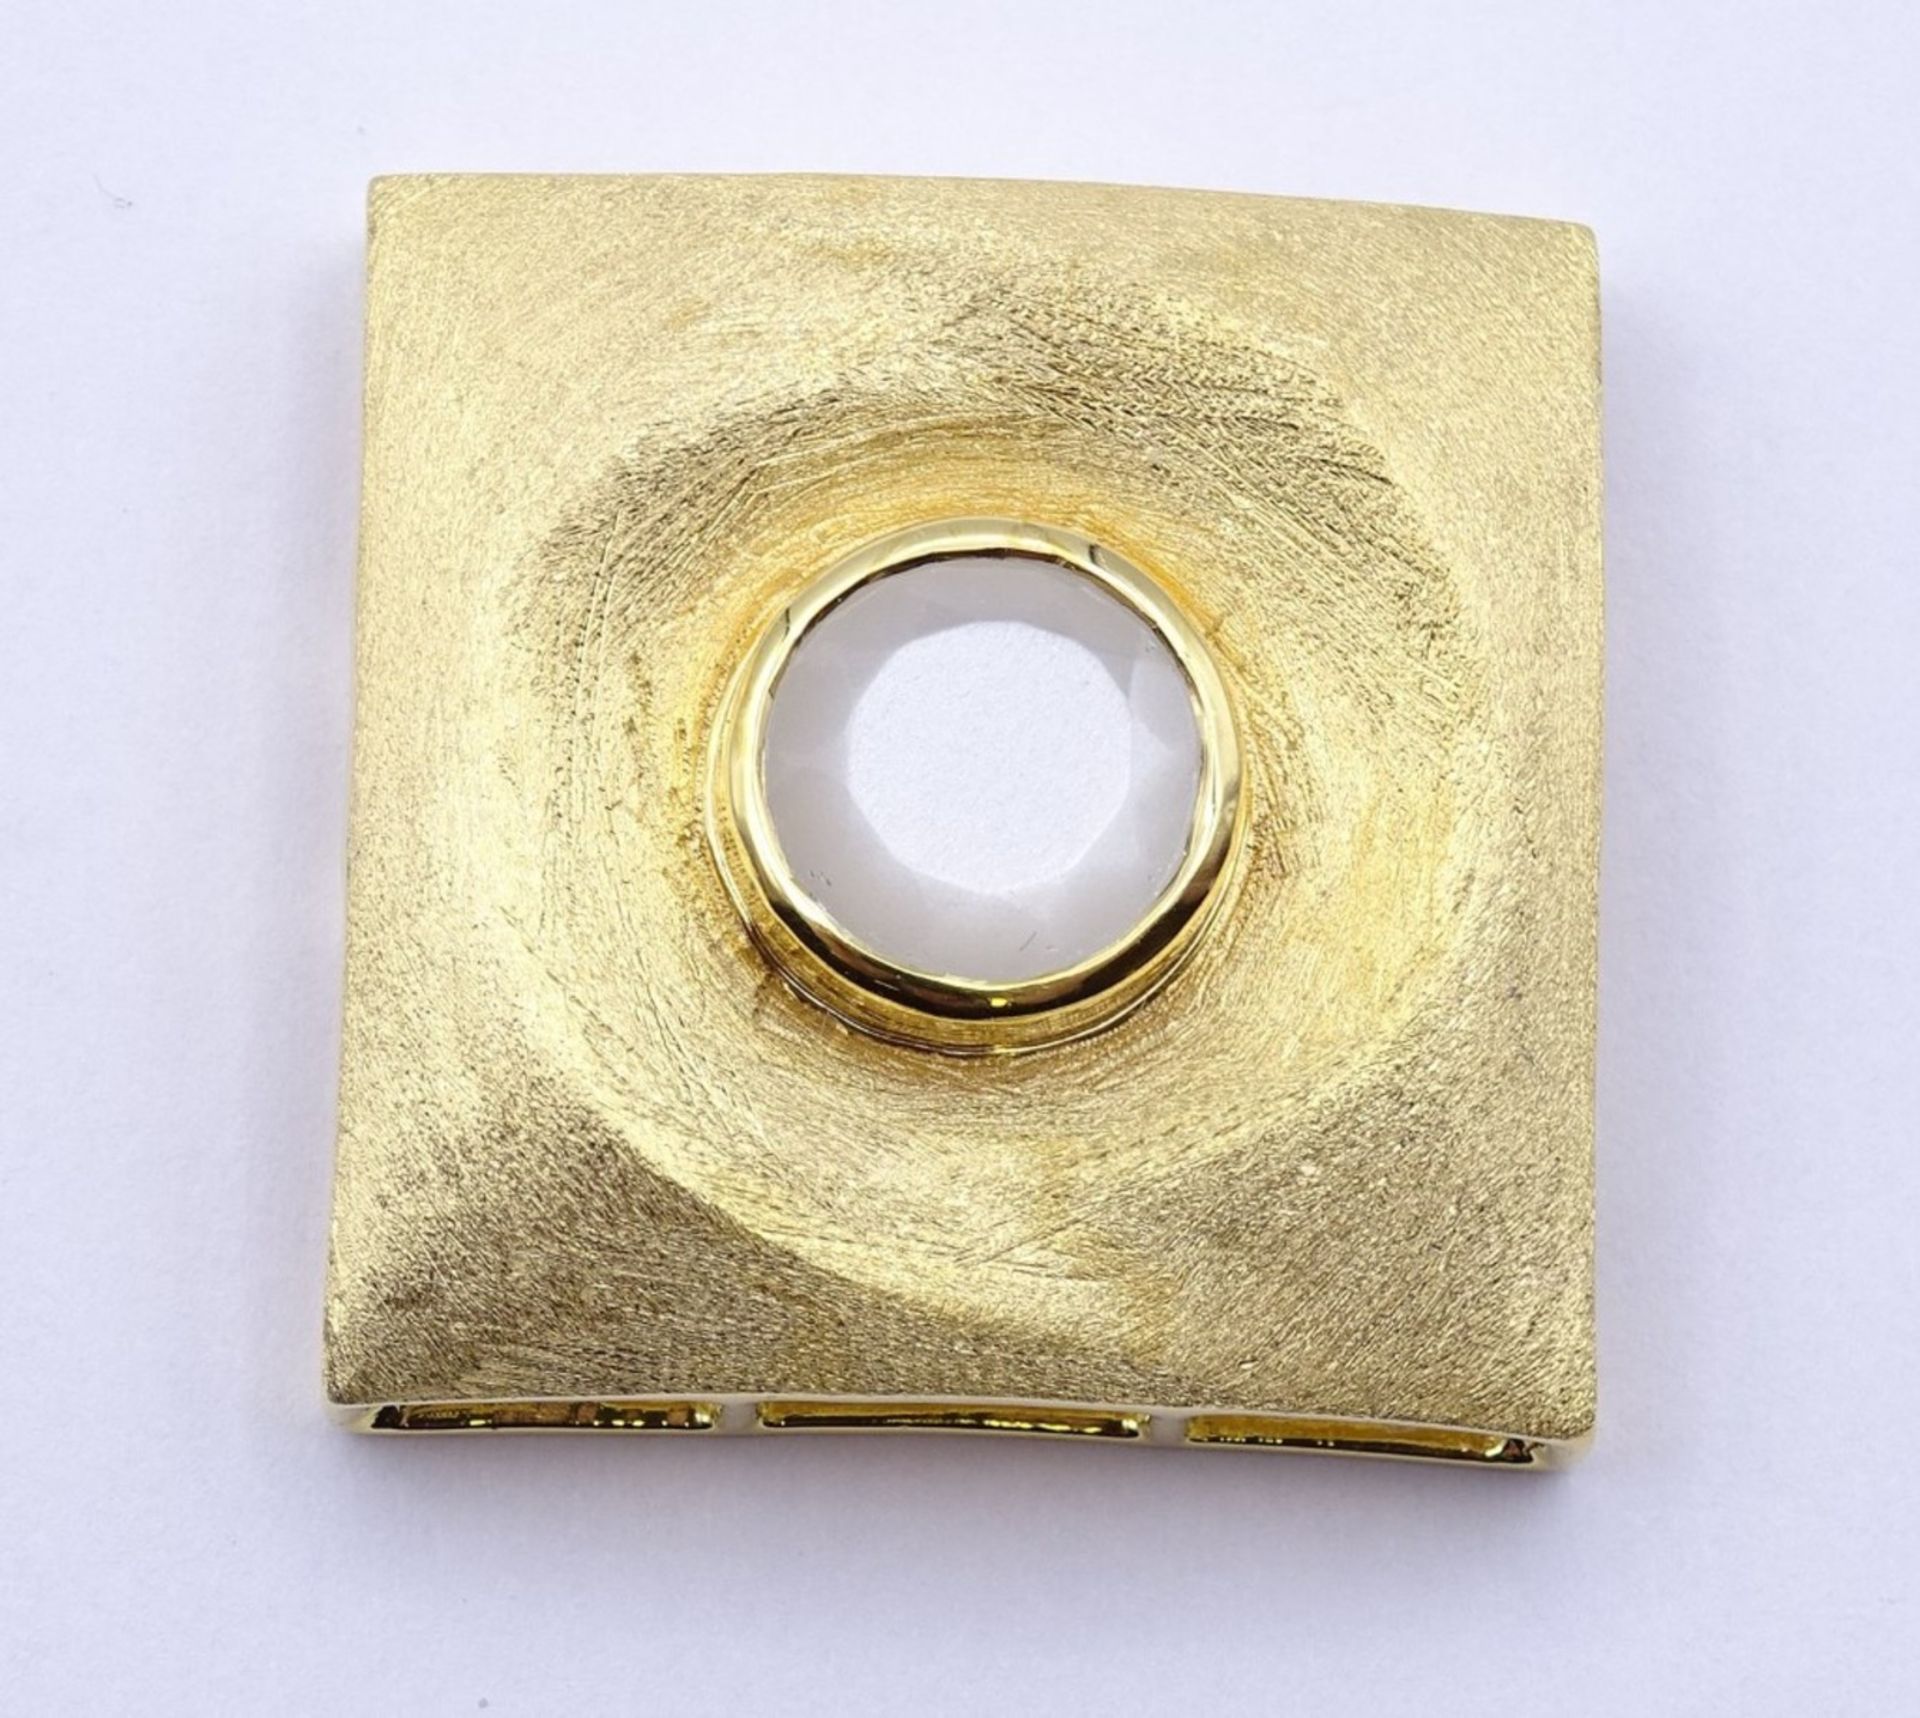 Ketten Anhänger Sterling Silber 0.925 vergoldet mit einen rund facc. Quartz, 2,9x 2,9cm, 14,6 g.sig. - Image 2 of 3